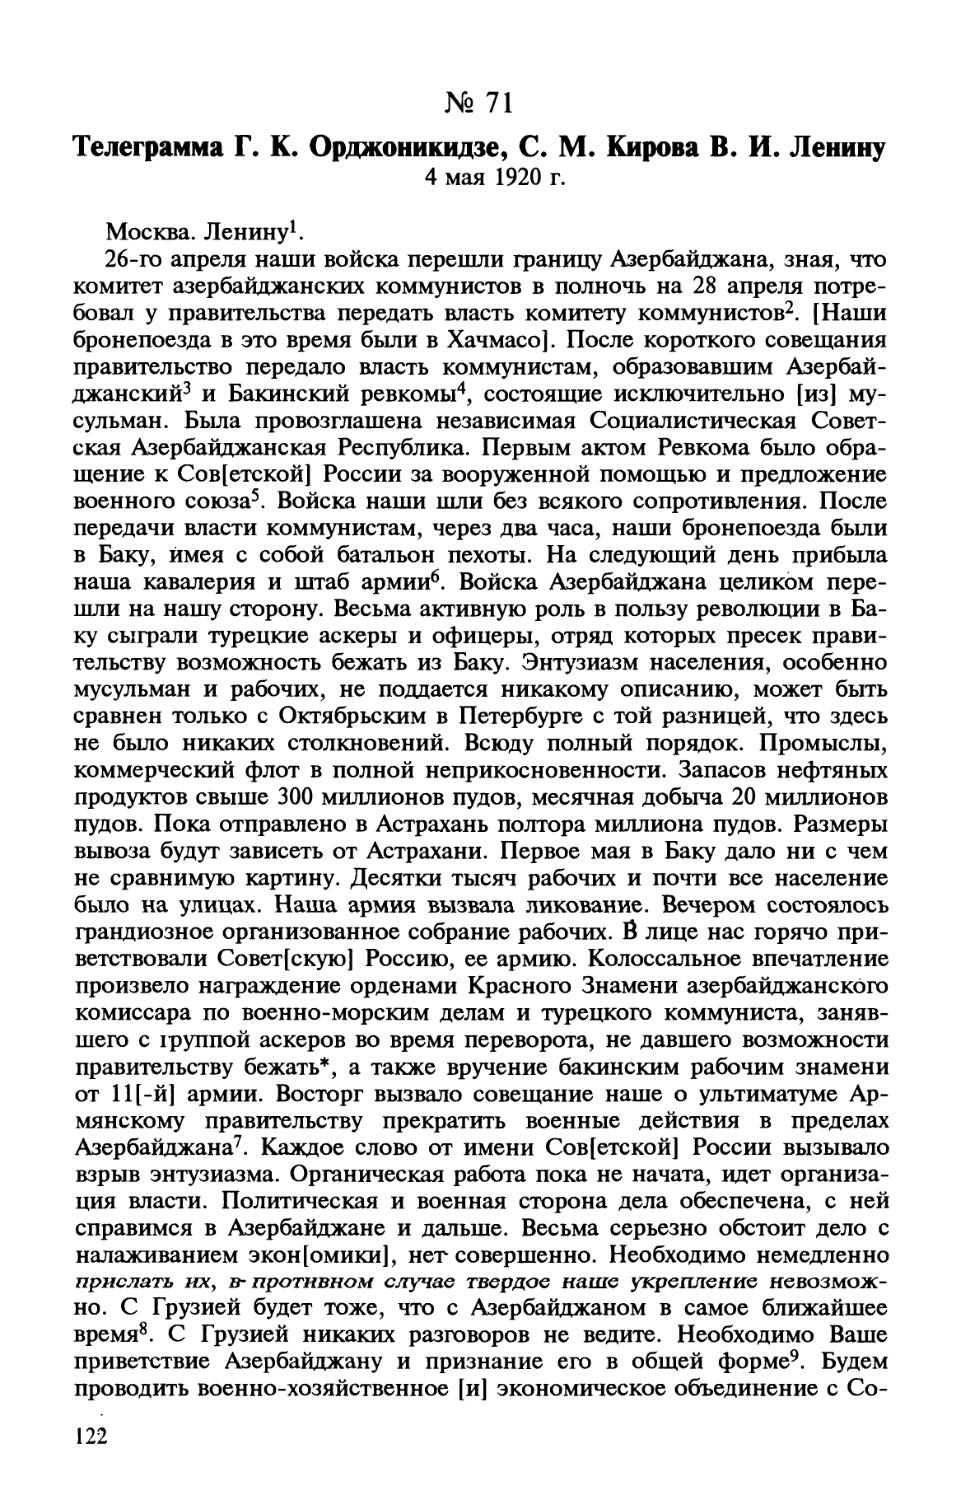 71. Телеграмма Г. К. Орджоникидзе, С. М. Кирова В. И. Ленину. 4 мая 1920 г.